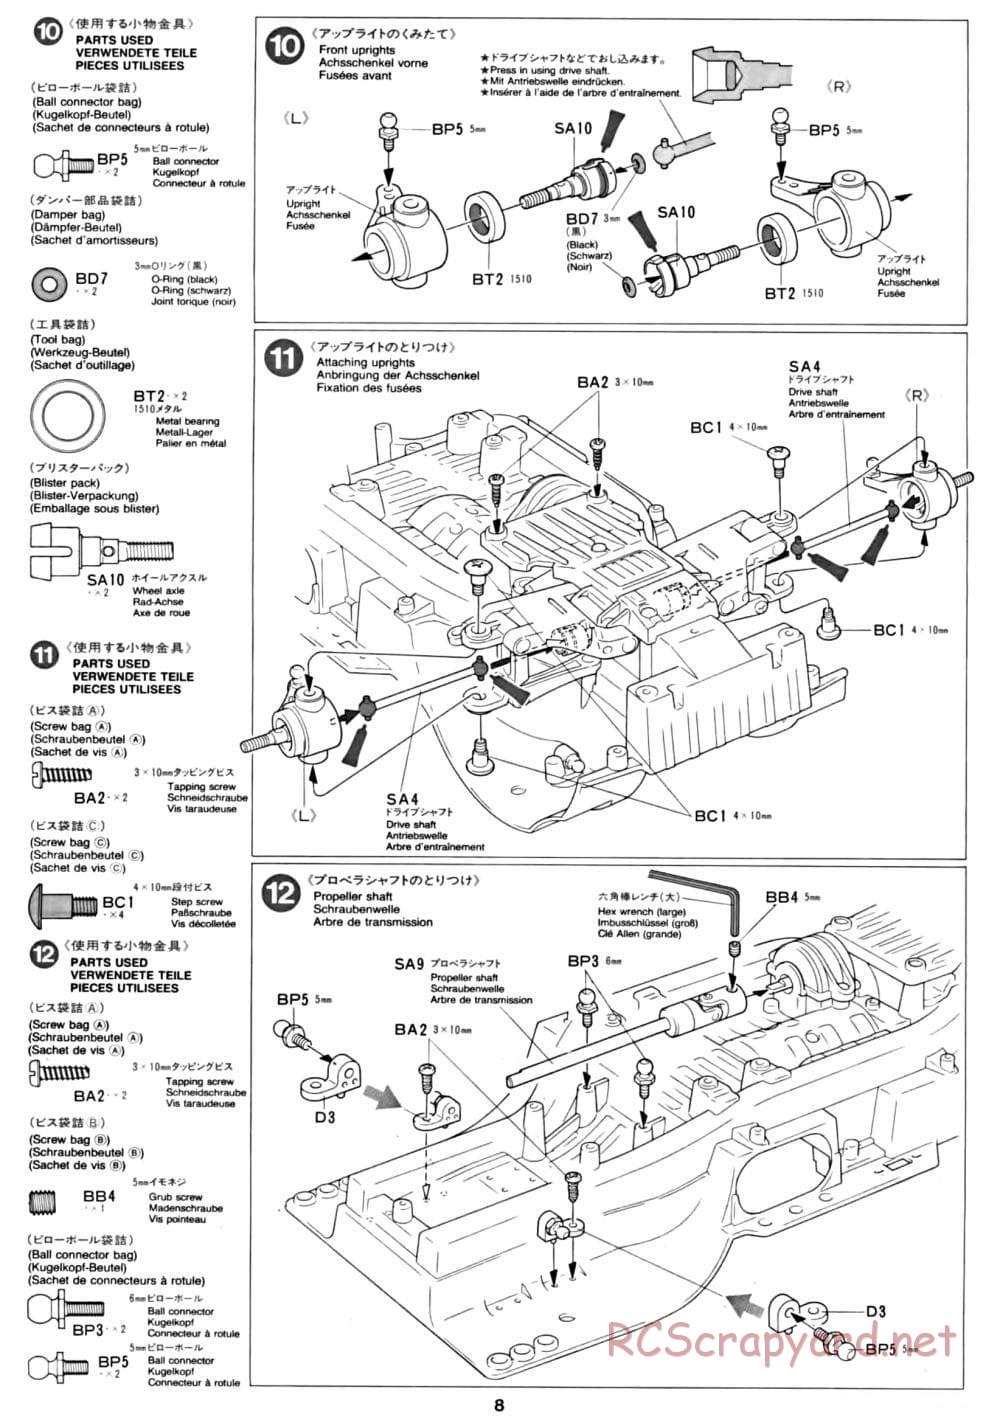 Tamiya - CC-01 Chassis - Manual - Page 8